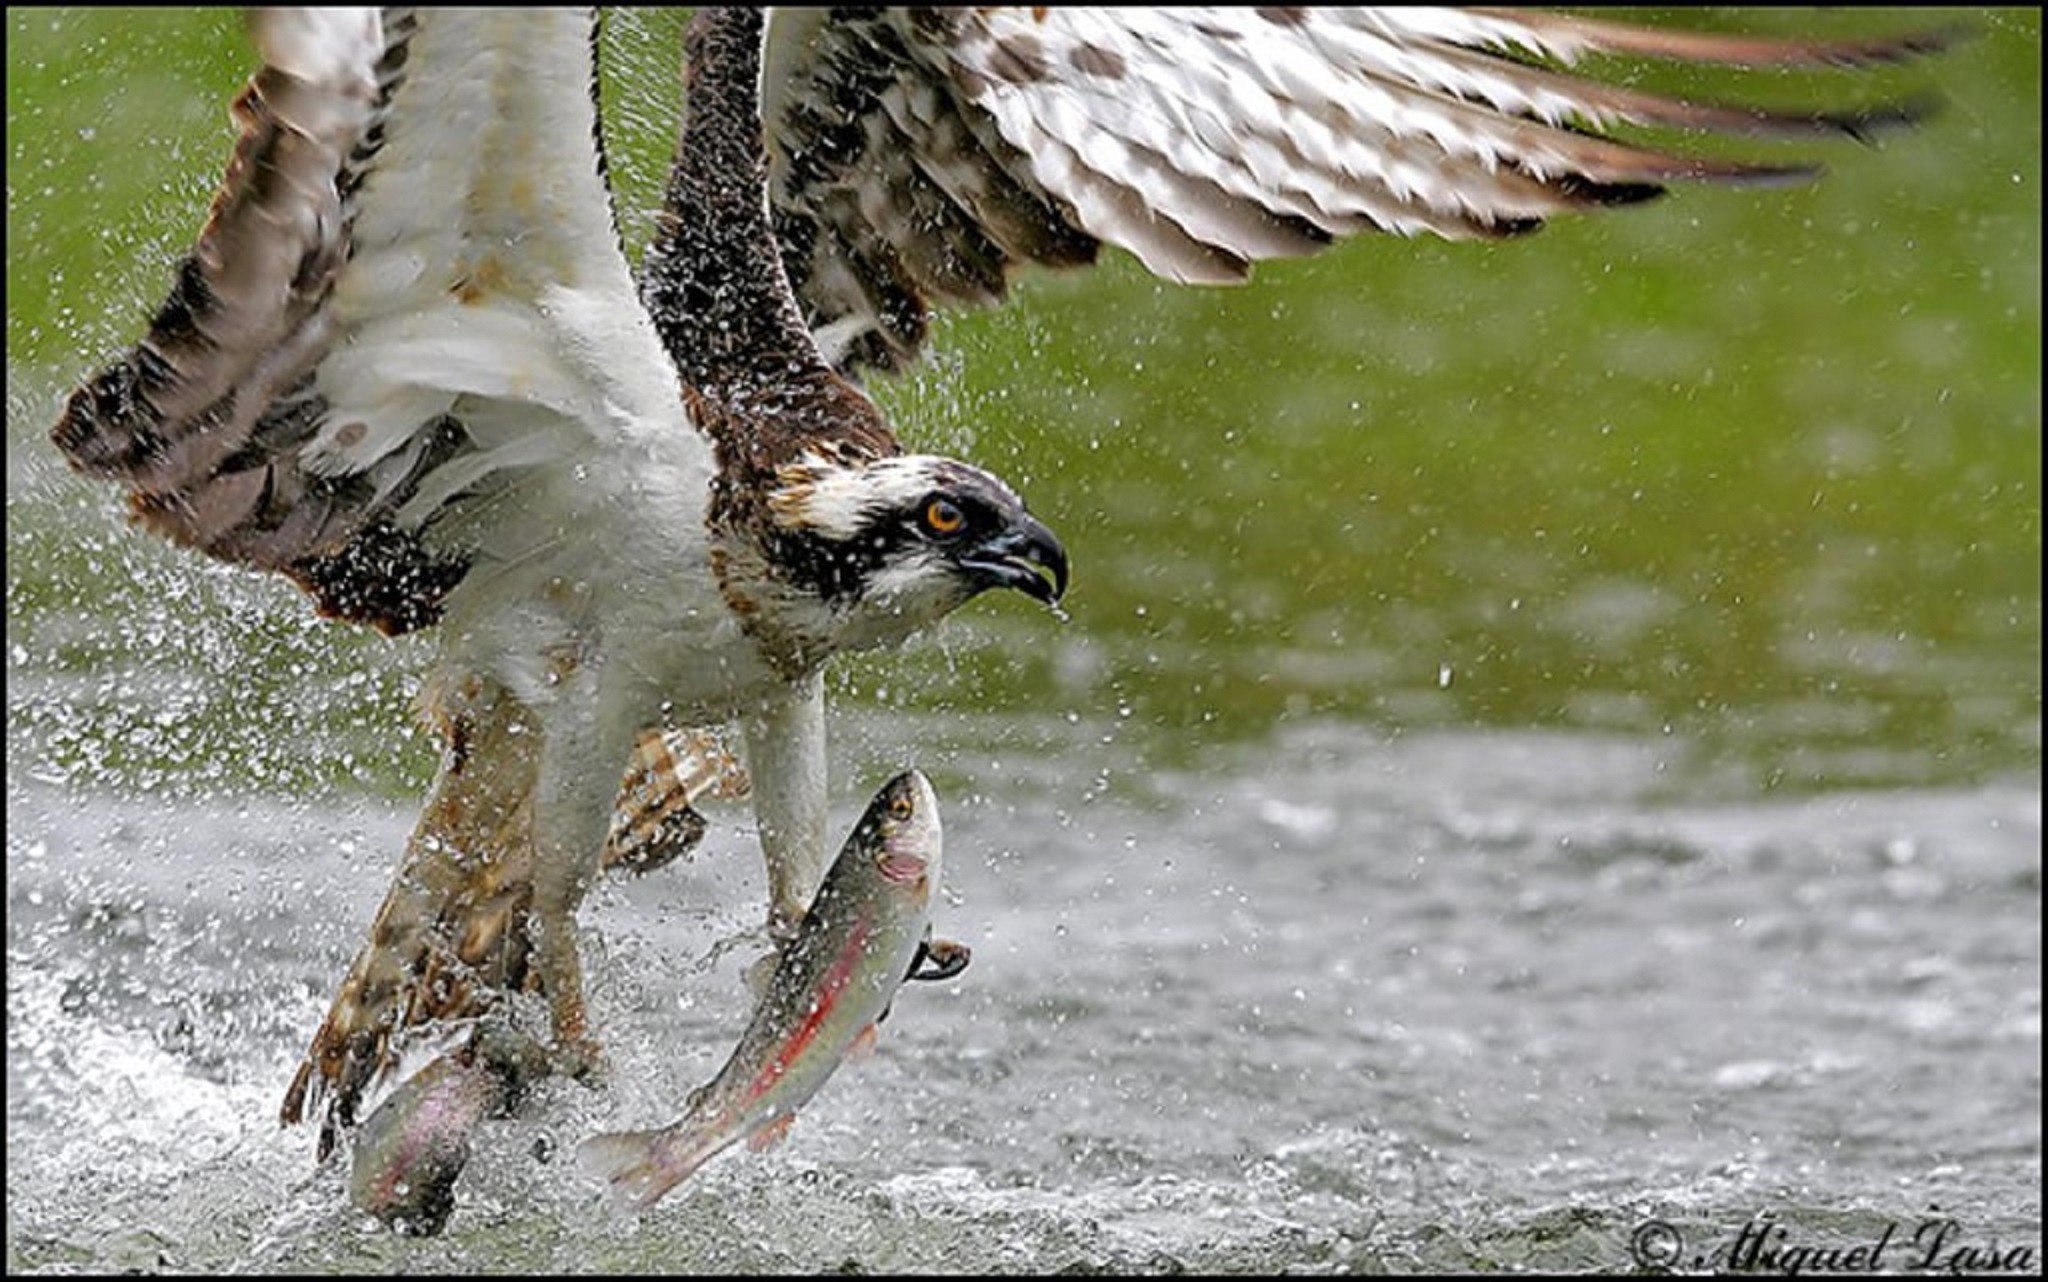 Орел ловит рыбу